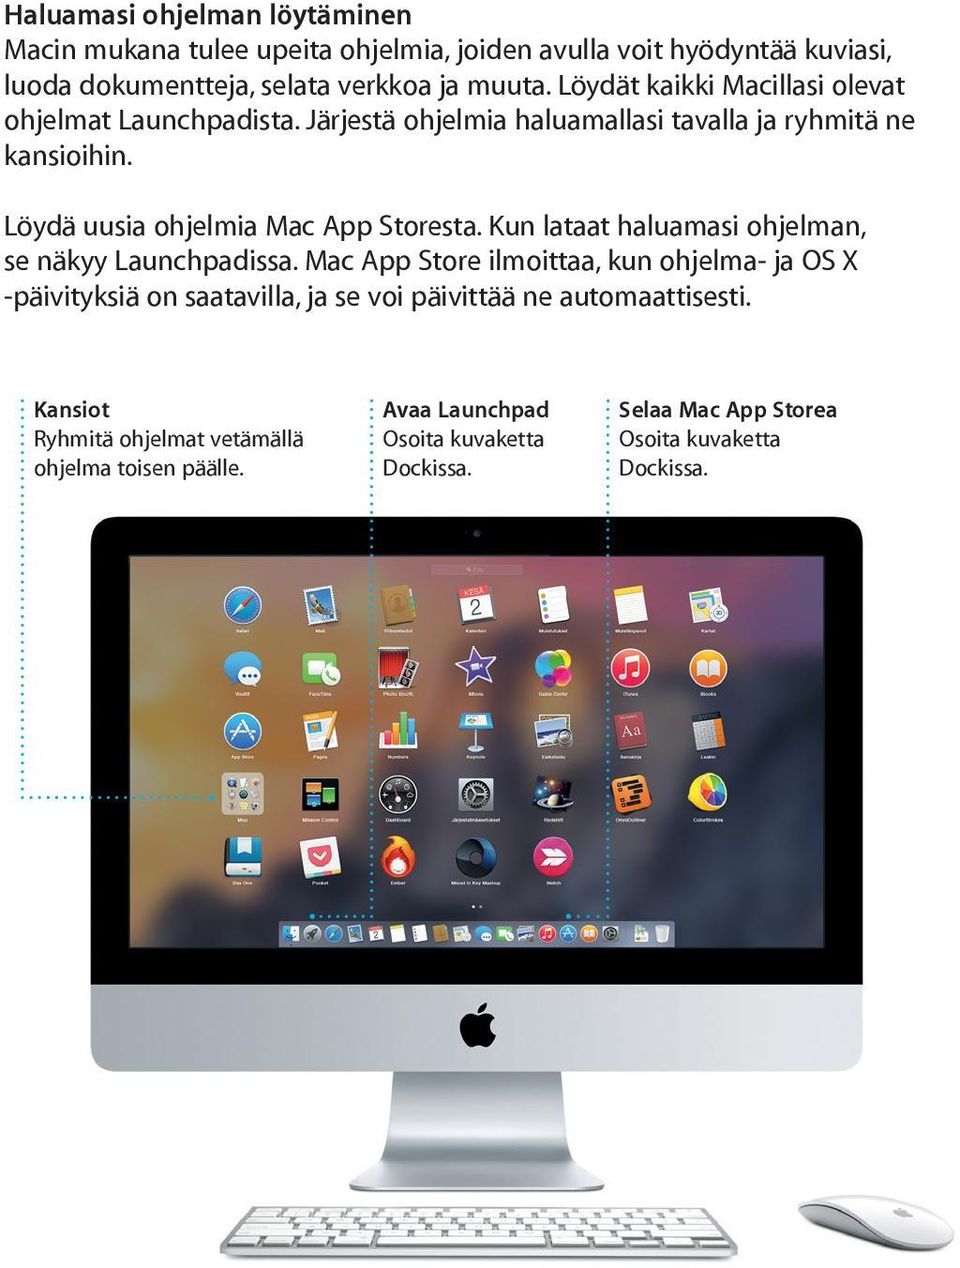 Löydä uusia ohjelmia Mac App Storesta. Kun lataat haluamasi ohjelman, se näkyy Launchpadissa.